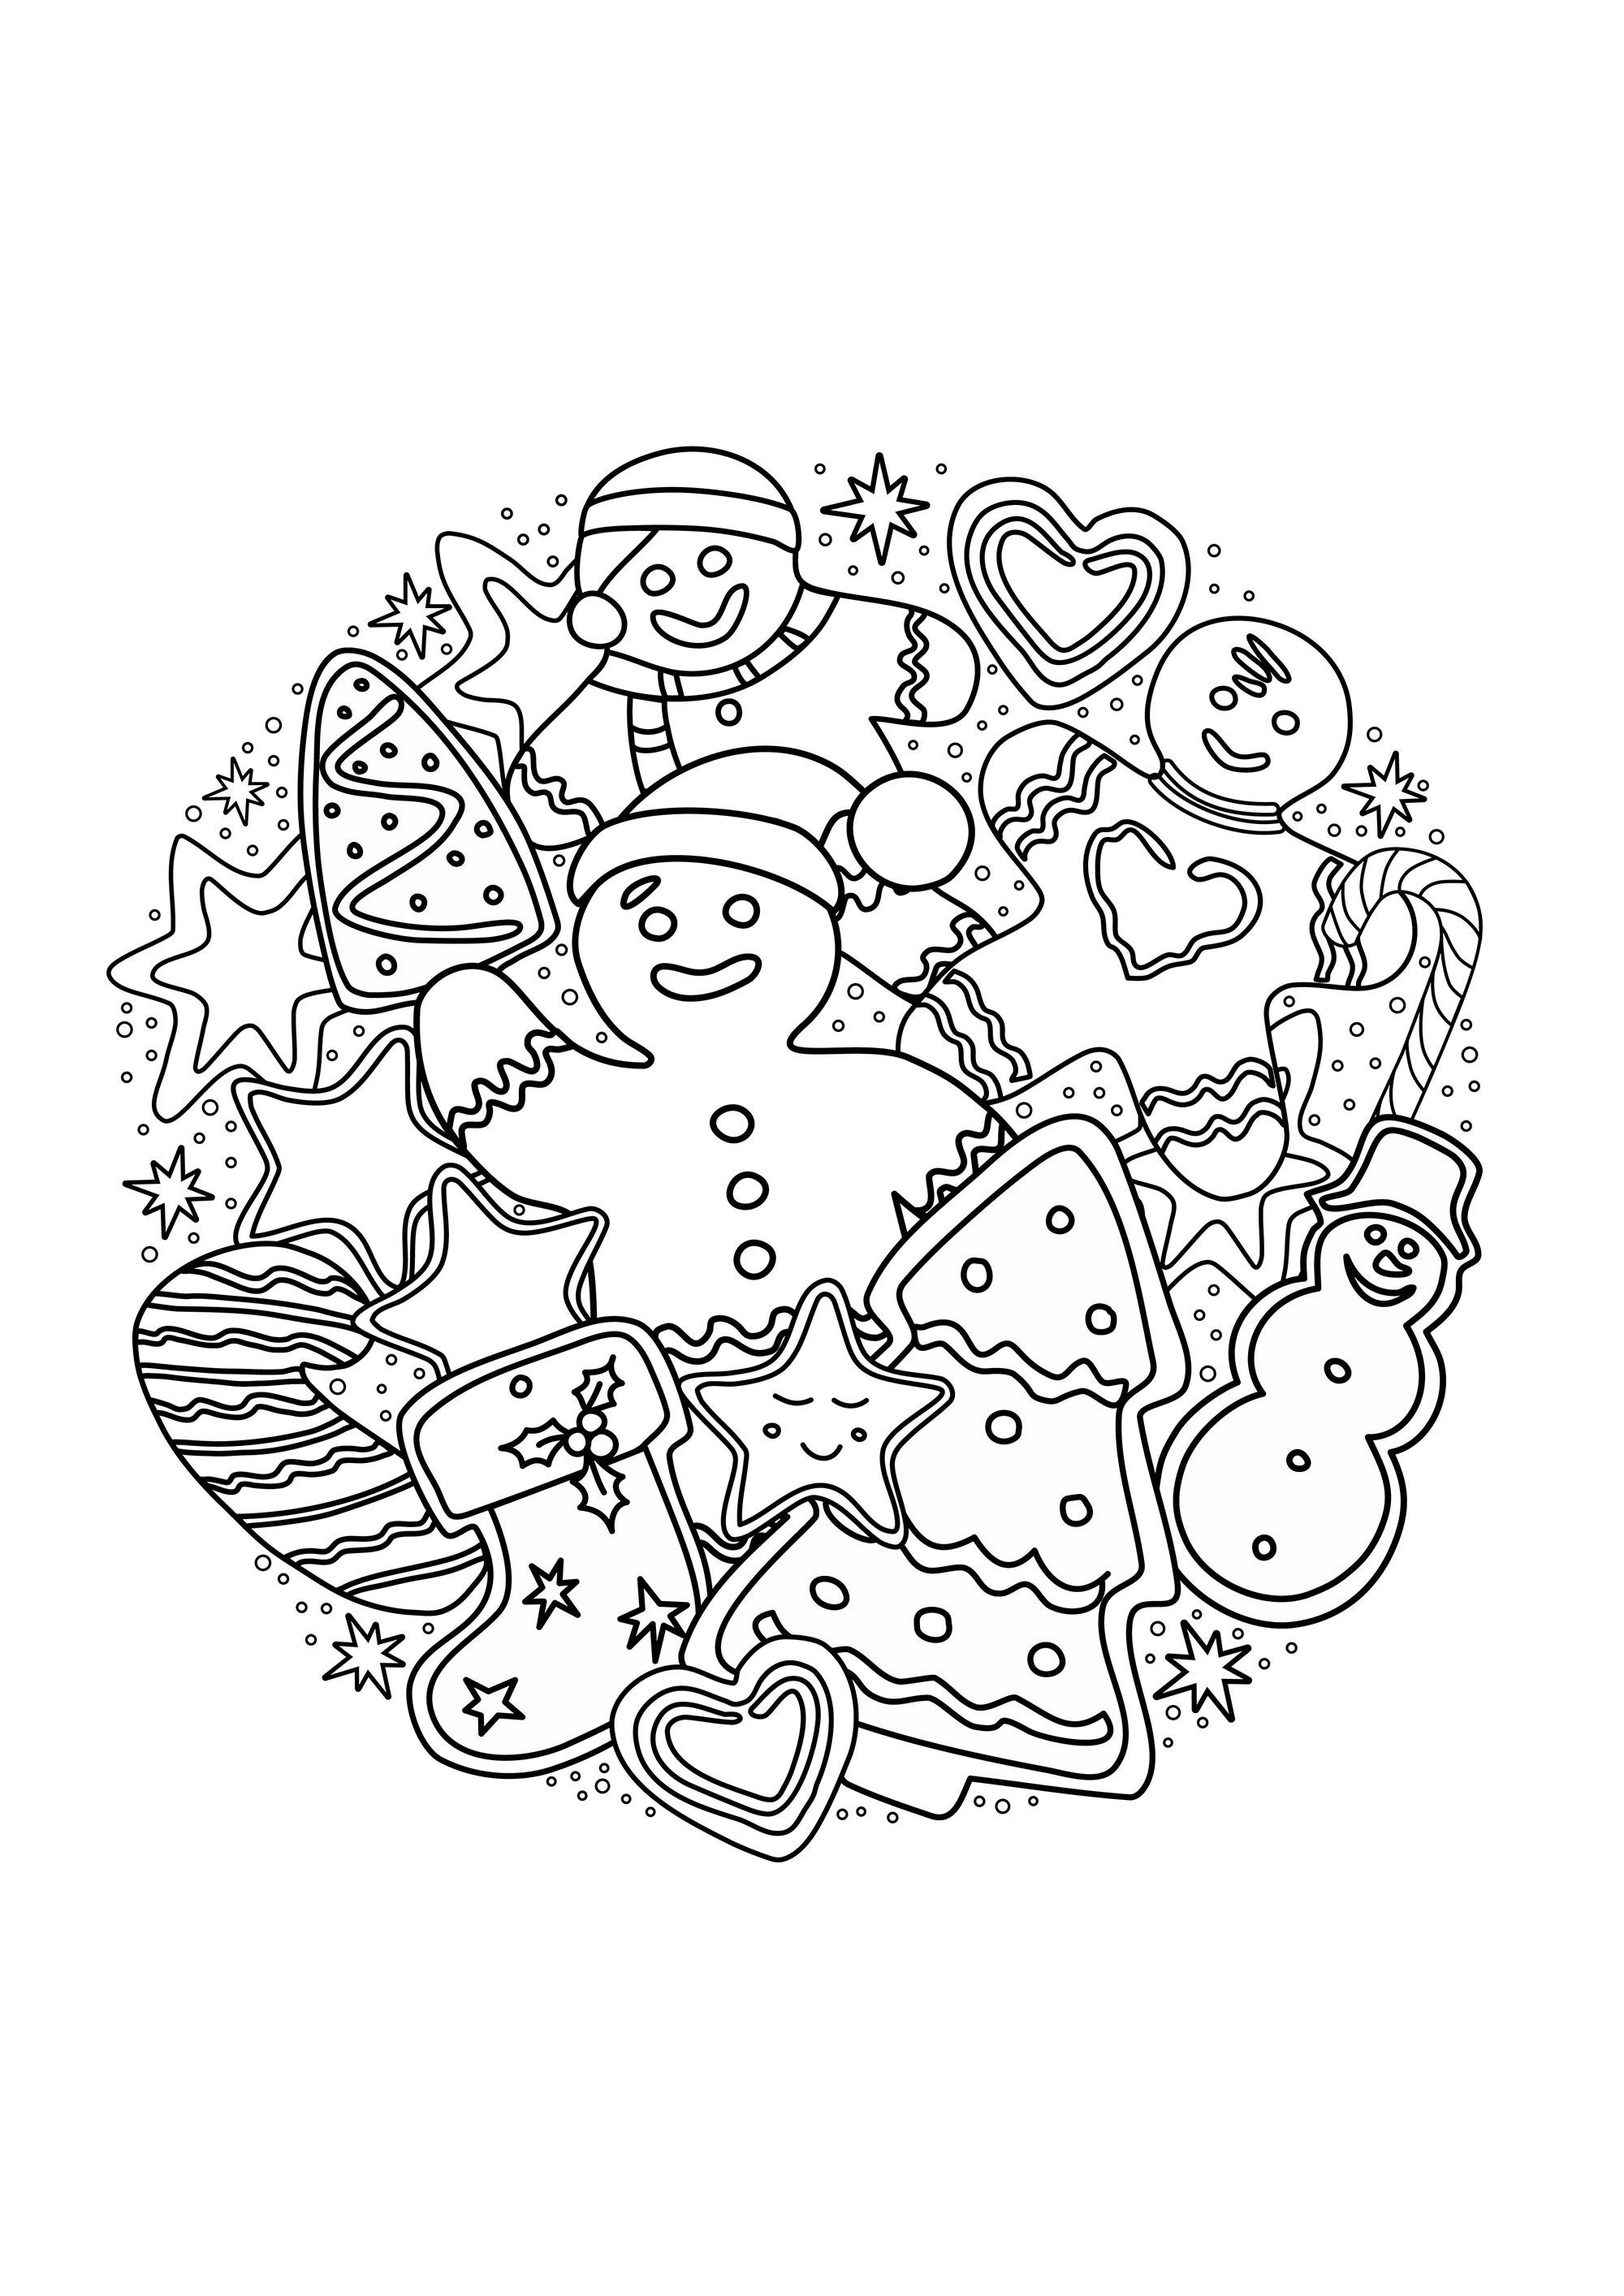 El hombre de Navidad de pan de jengibre y otros motivos navideños en un bonito mandala para colorear